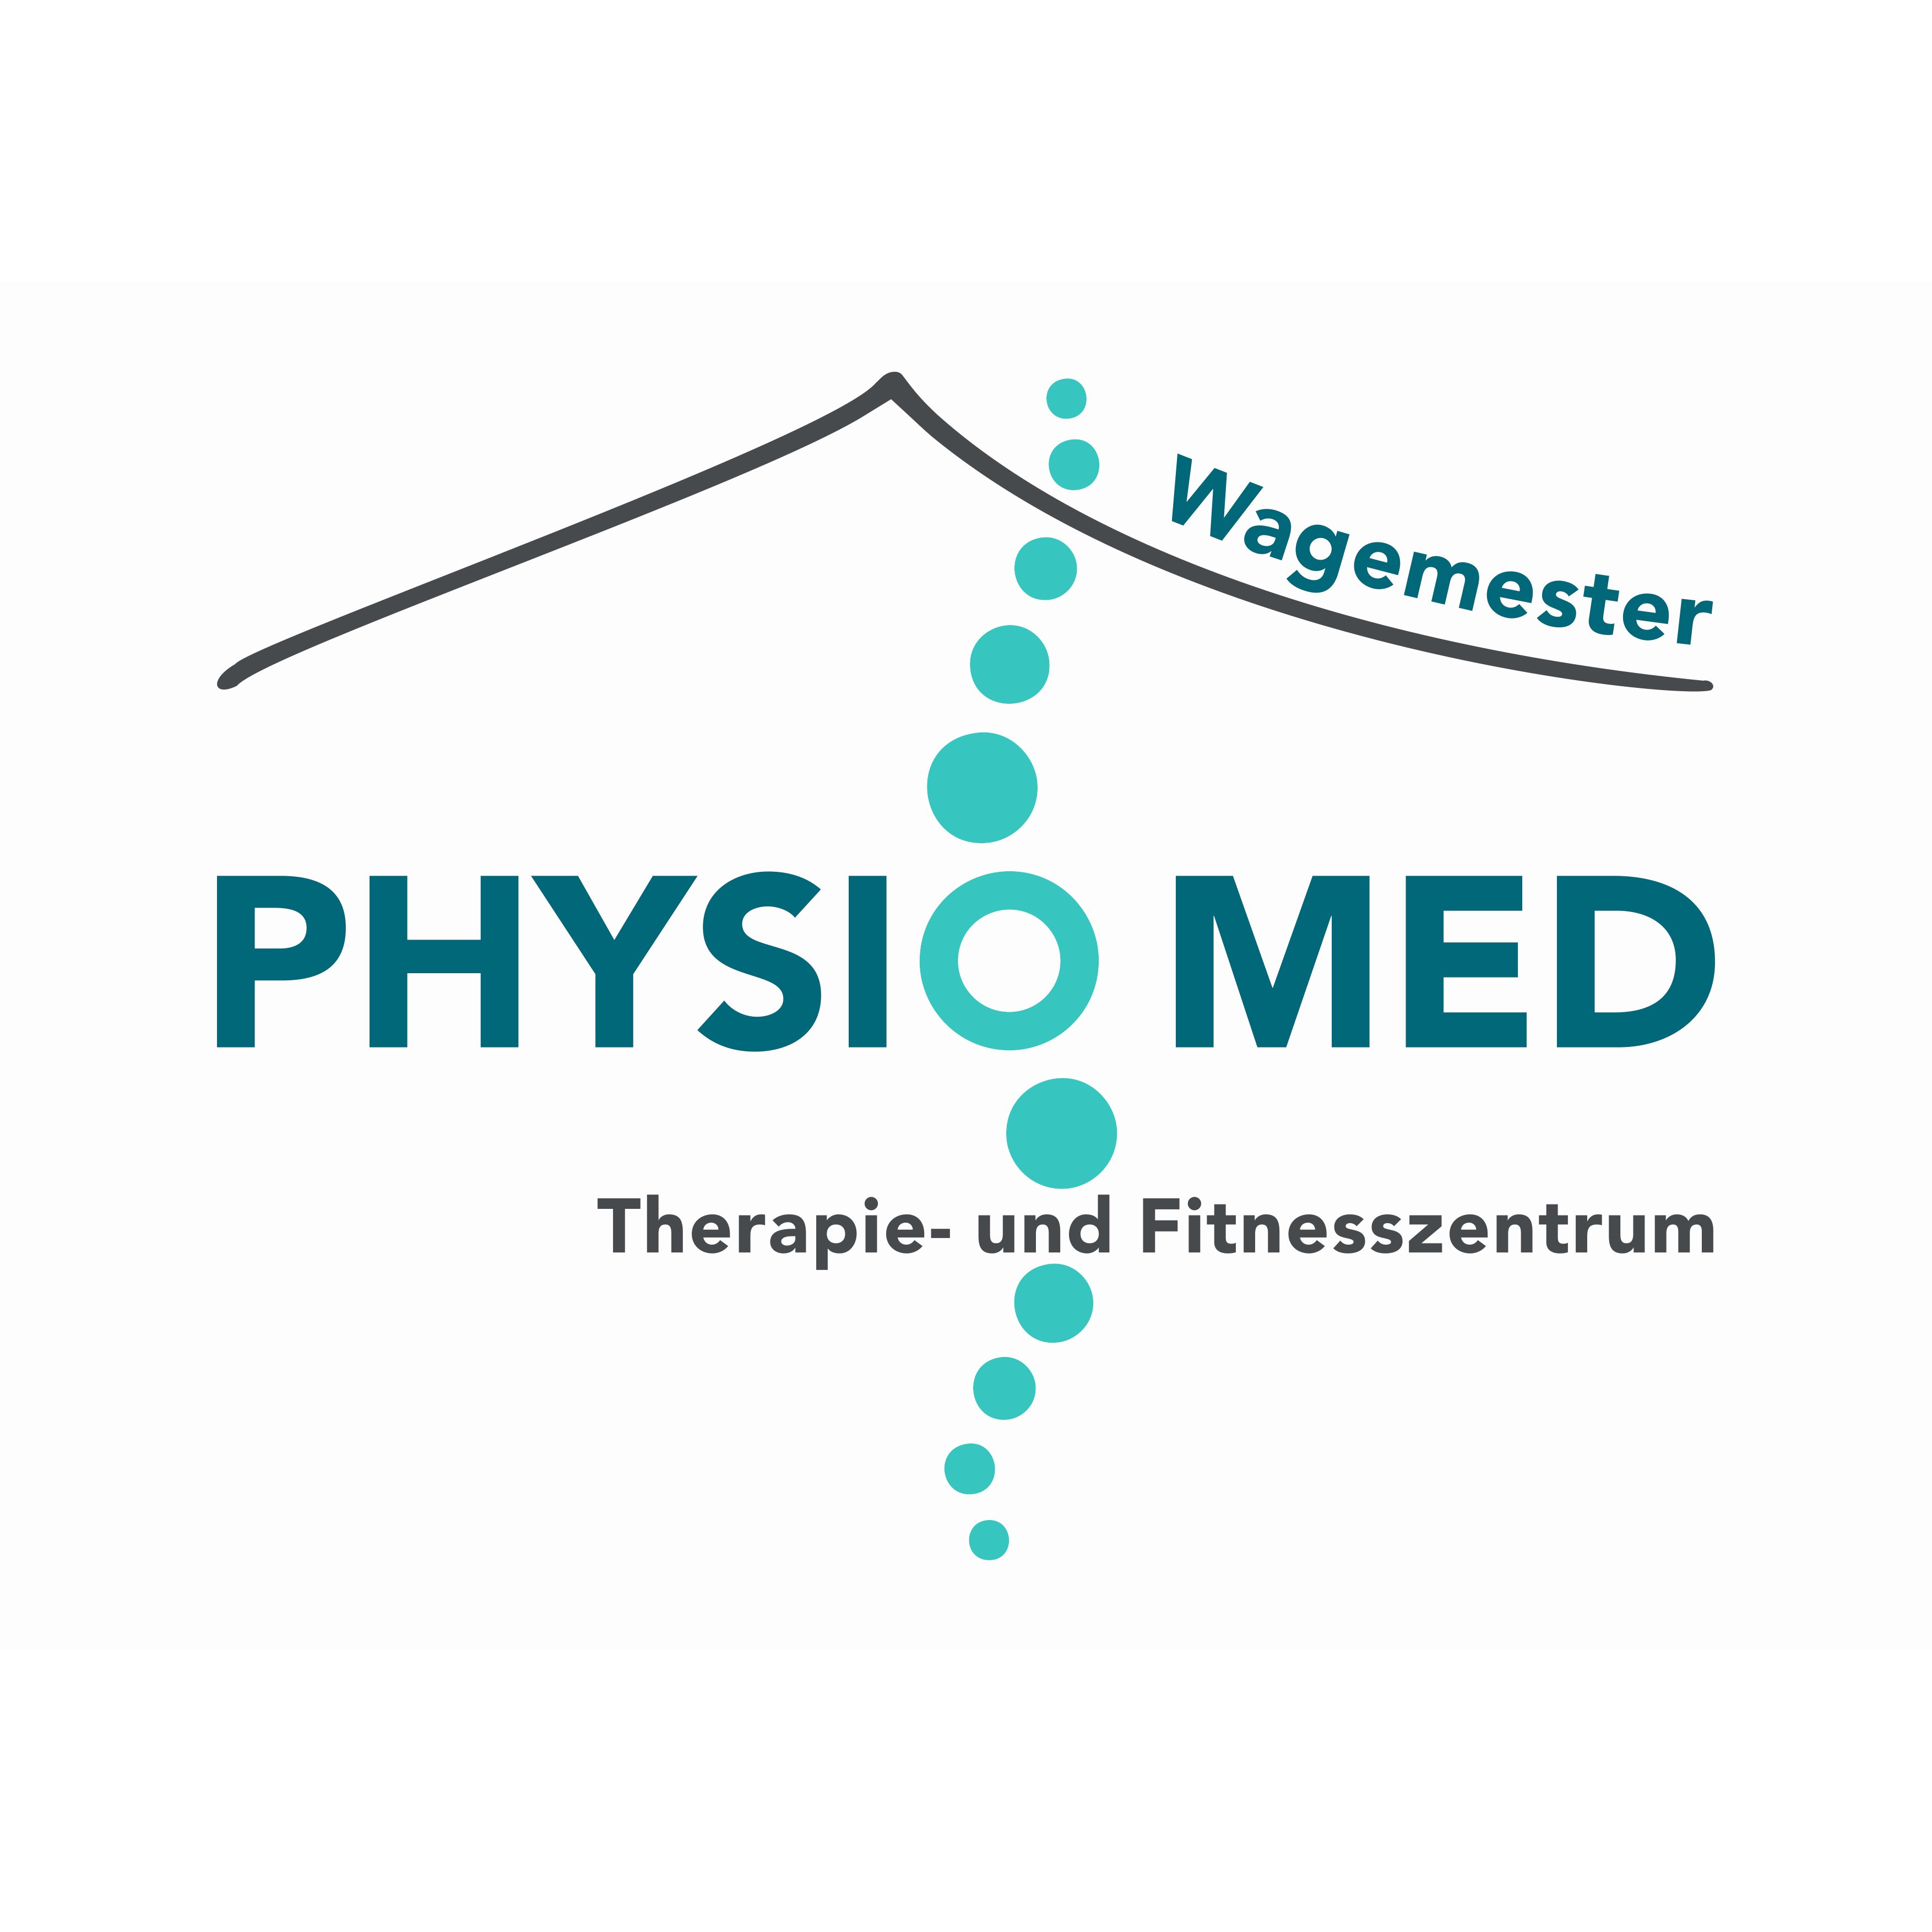 PhysioMed Wagemester | Therapie- und Fitnesszentrum | Linda Krone Logo